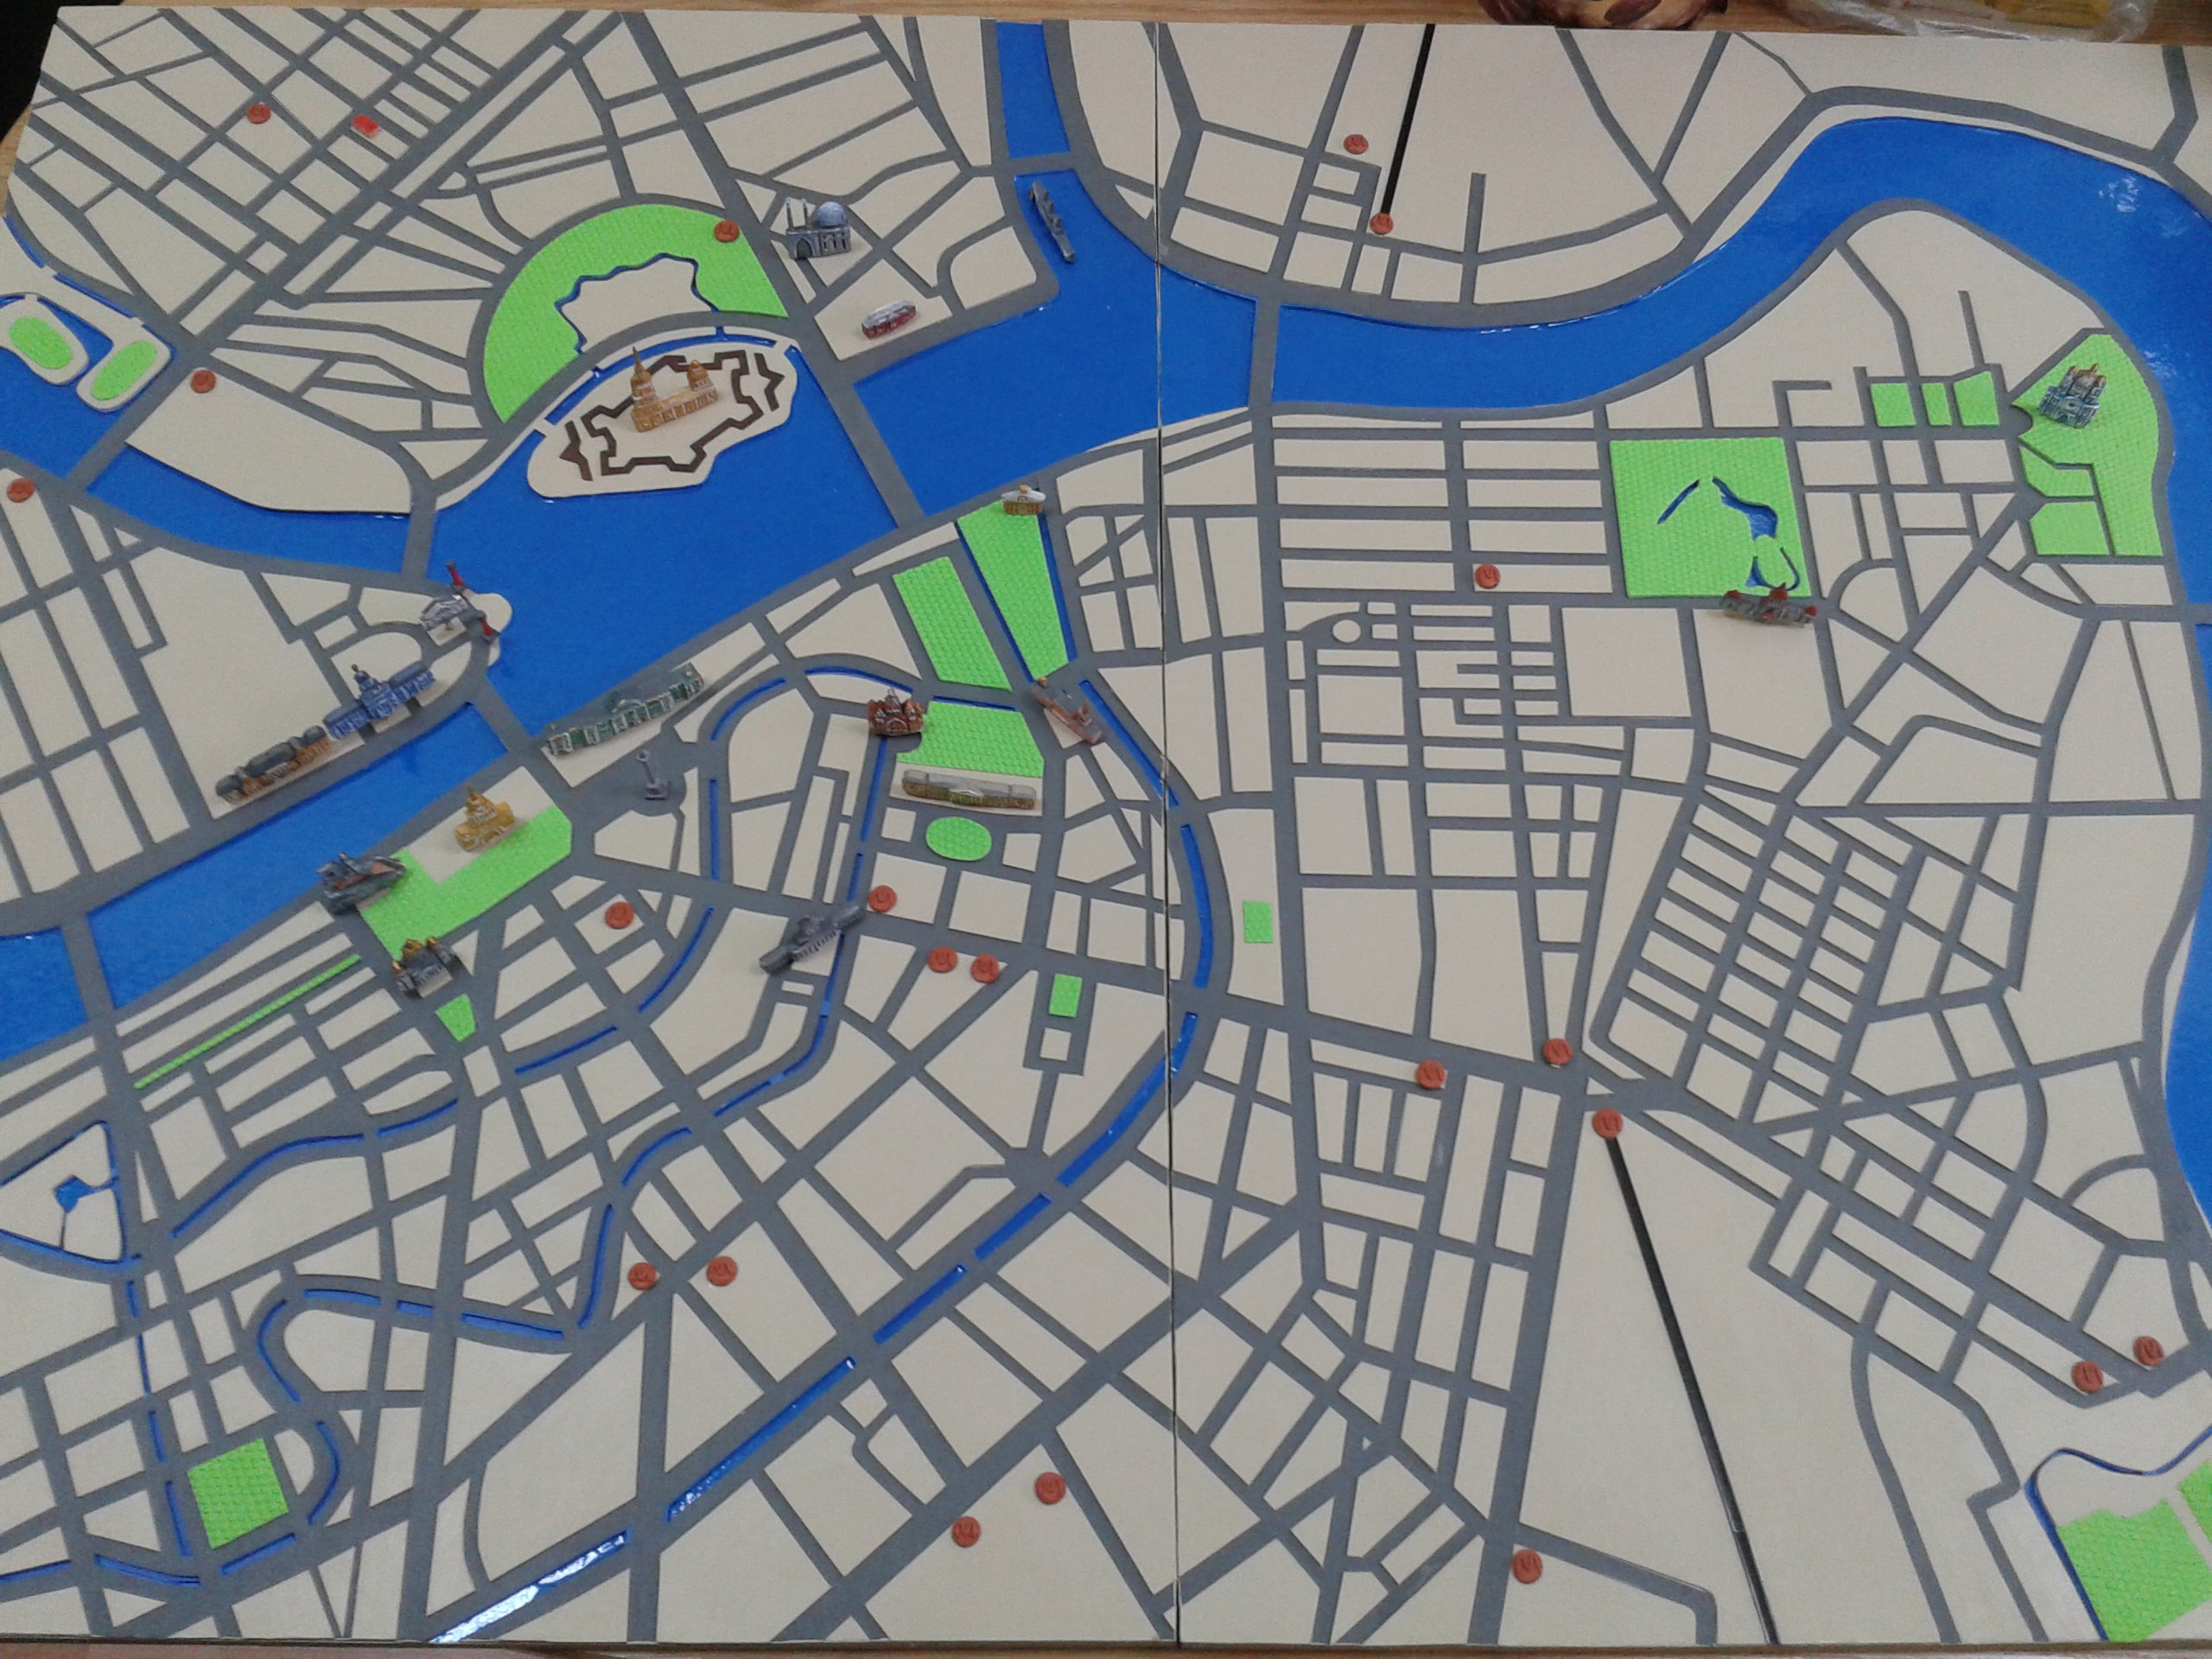 Тактильная карта центра Санкт-Петербурга с размещенными на ней 3D объектами центра города: Петропавловская крепость, Эрмитаж, Адмиралтейство и др.